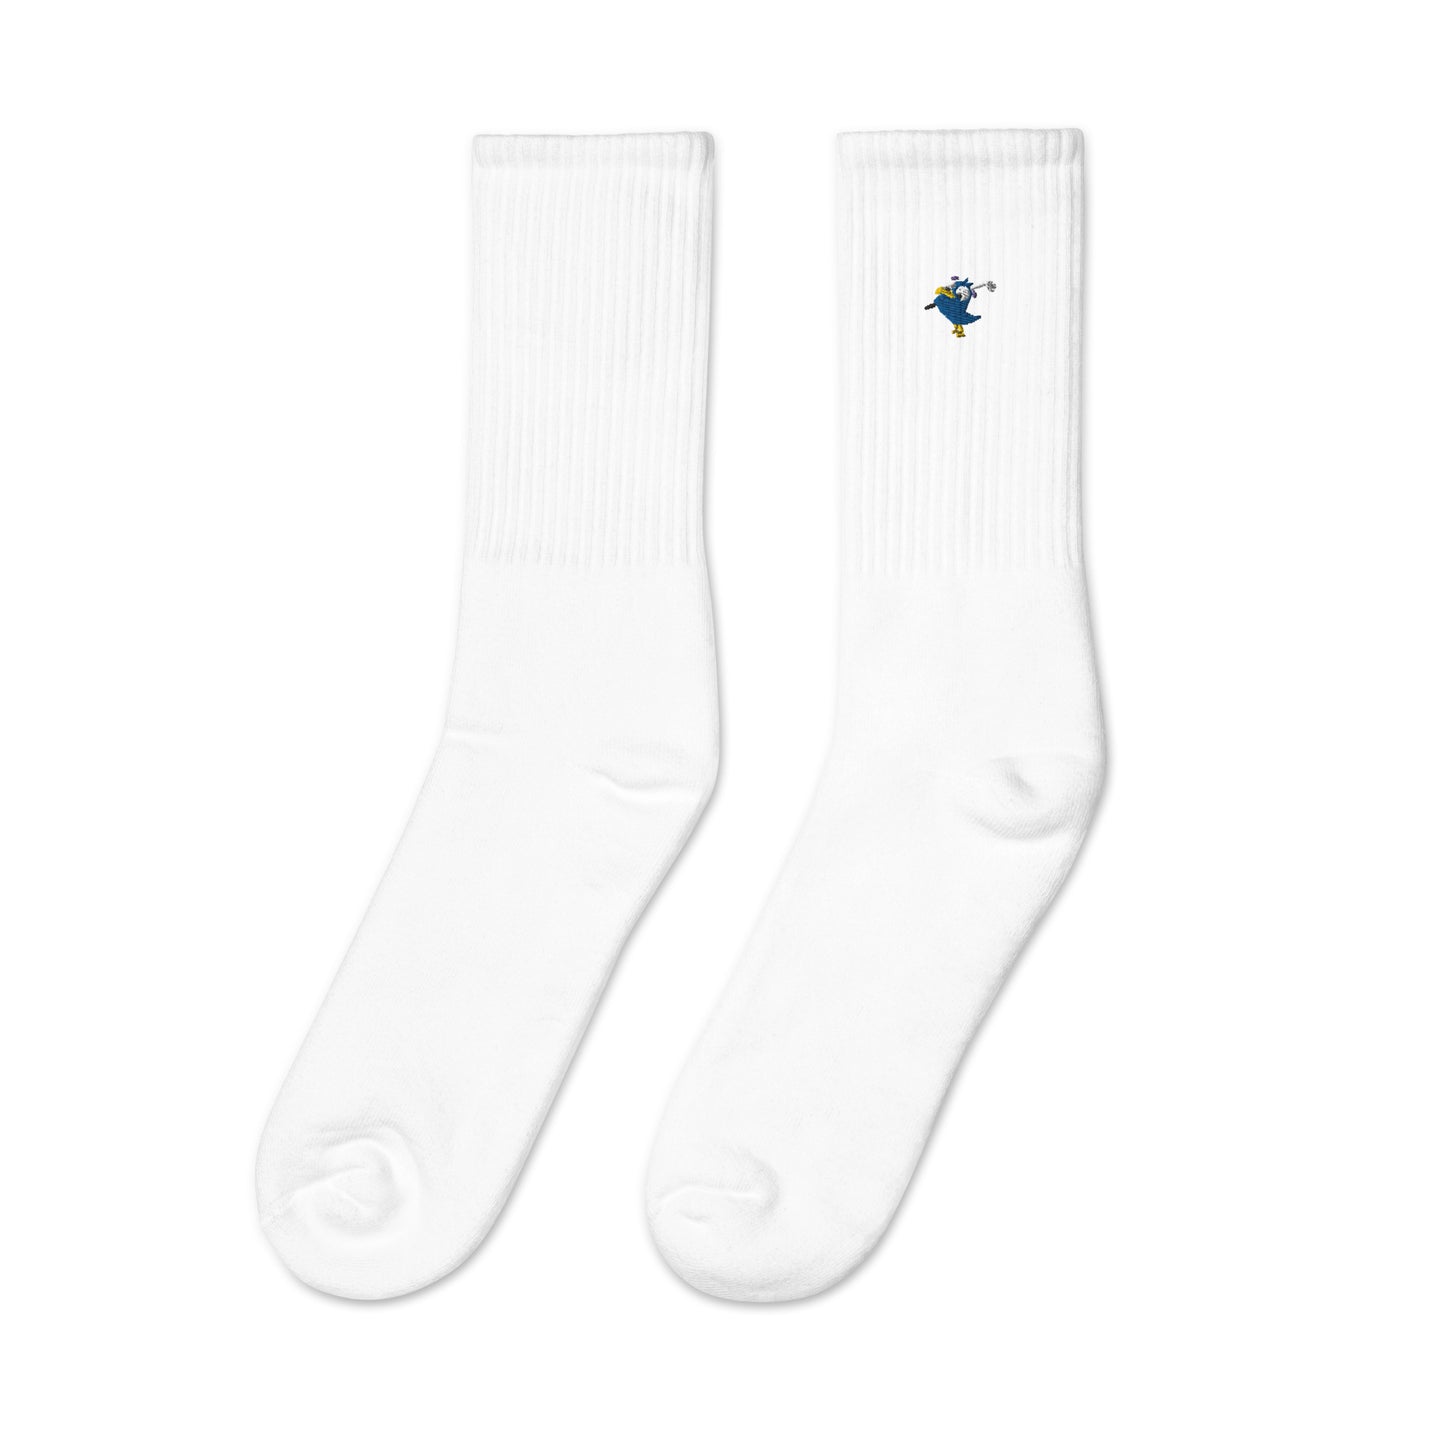 Birdie Socks